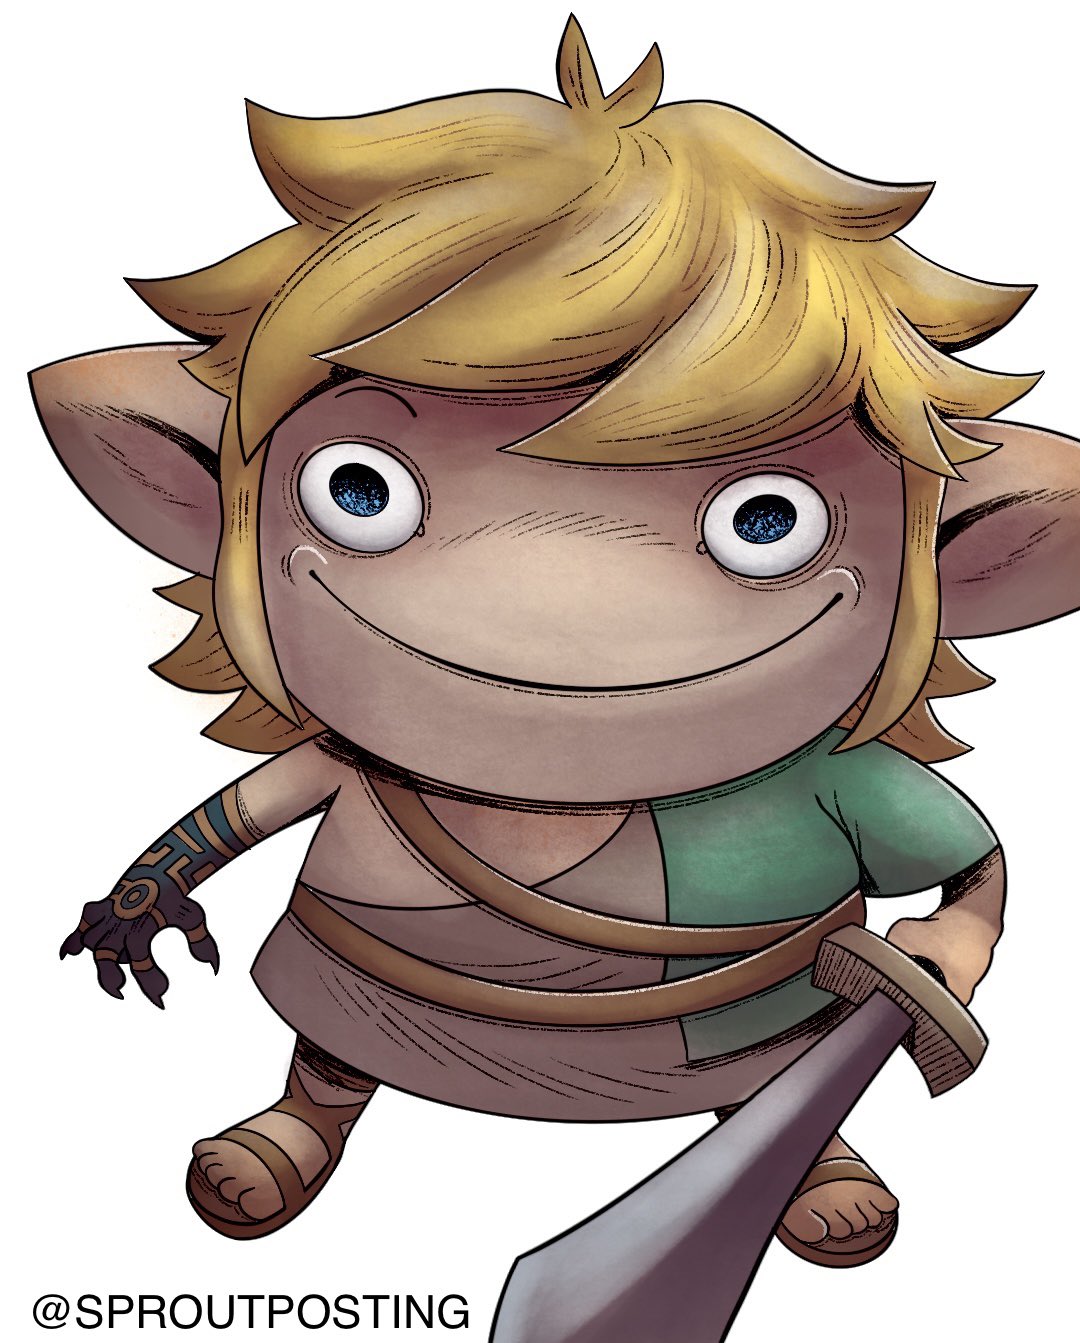 Zelda: Tears of the Kingdom Twitch Stream - 12pm CST by DoodleDoggy -- Fur  Affinity [dot] net